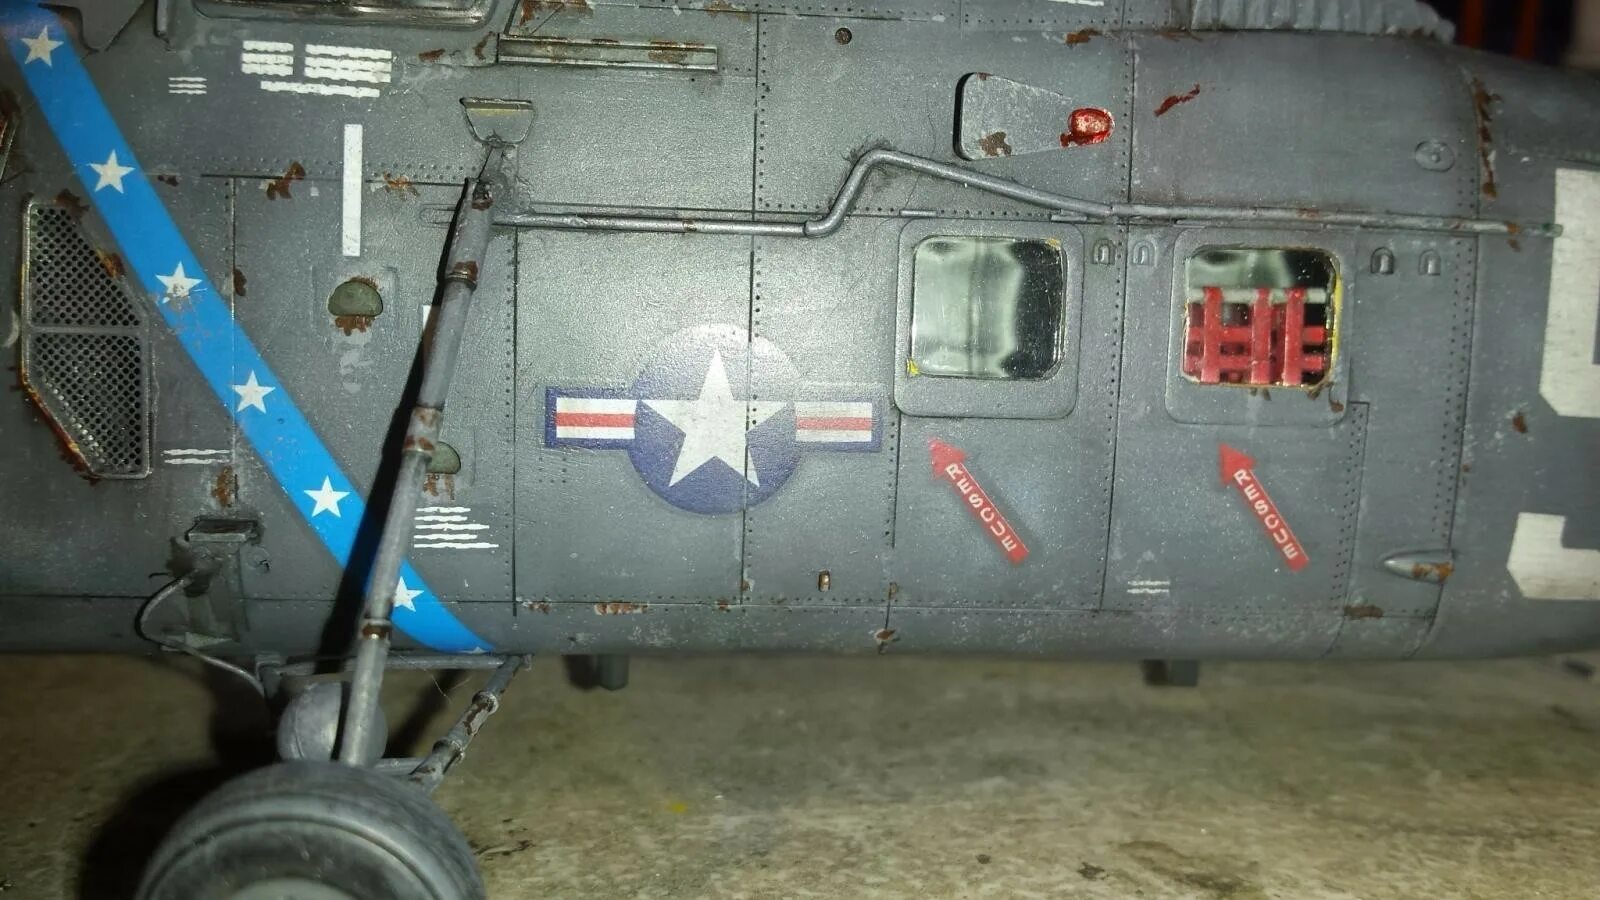 48 1 46. 2776 Italeri военно-транспортный вертолет h-34a Pirate/uh-34d u.s. Marines 1 48. H-34 Choctaw. Trumpeter 02886 uh-34d Seahorse сборка. Uh 34d архивные фото.